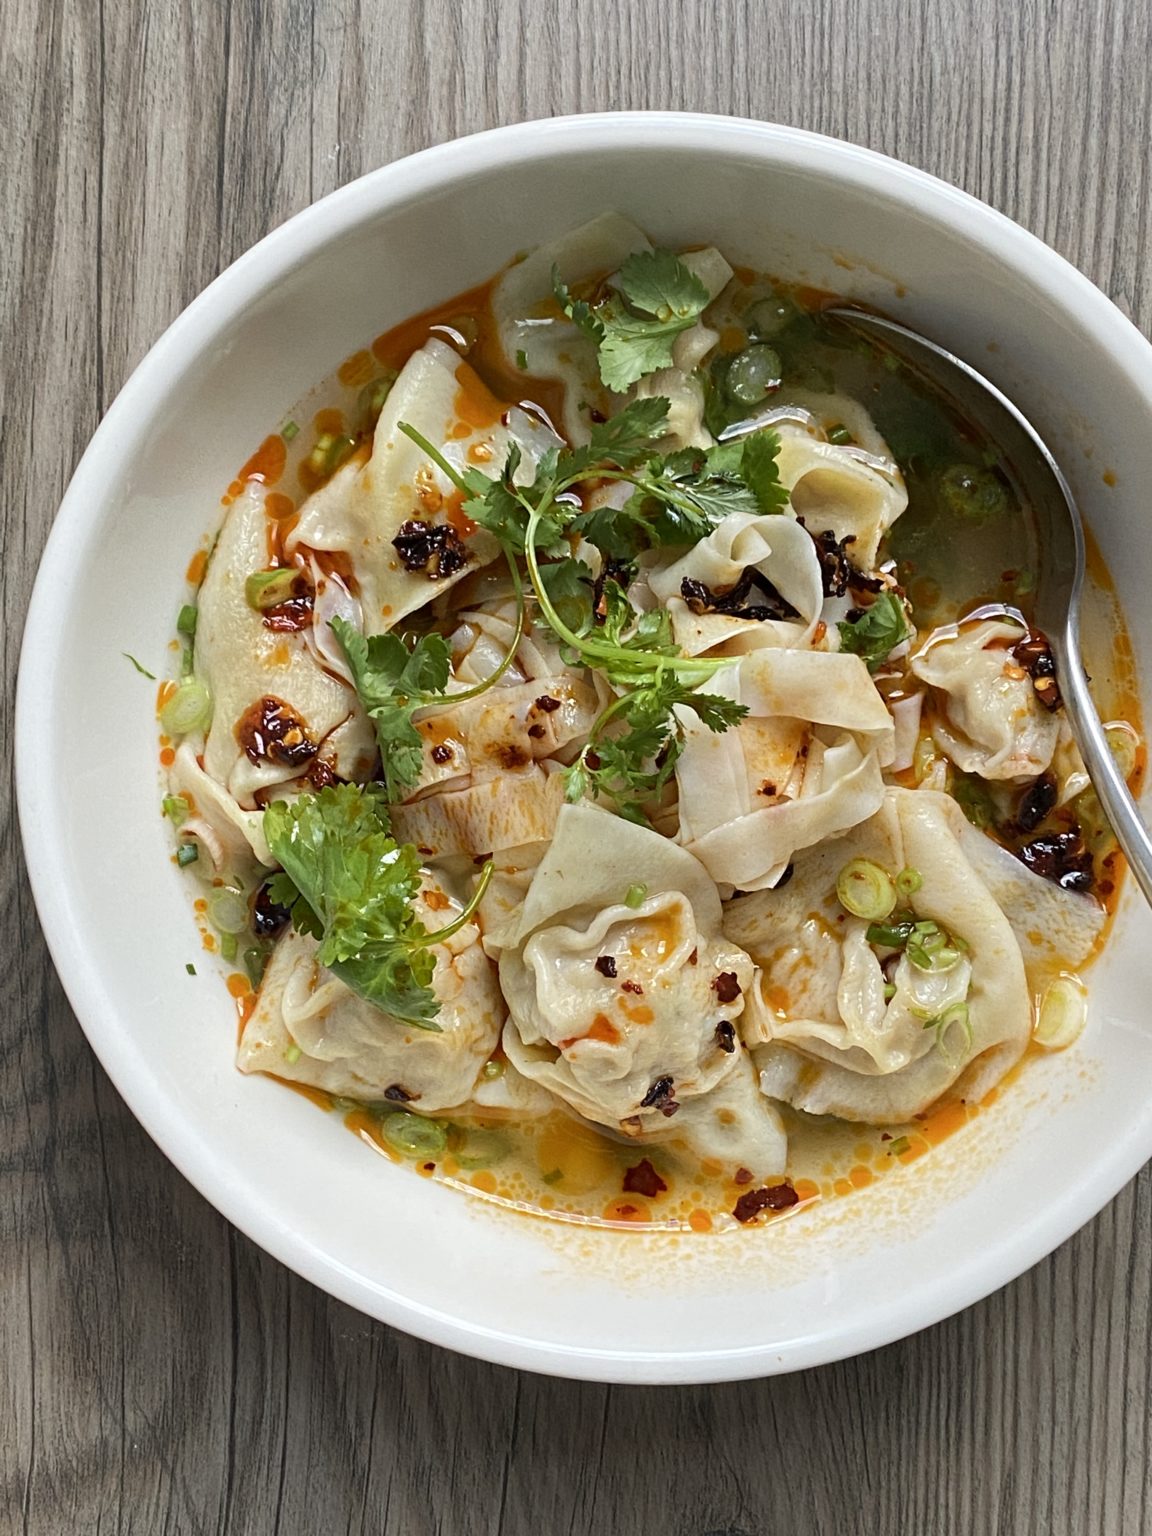 Buns & Dumplings – Wonton and Noodle Soup – Reggie Soang